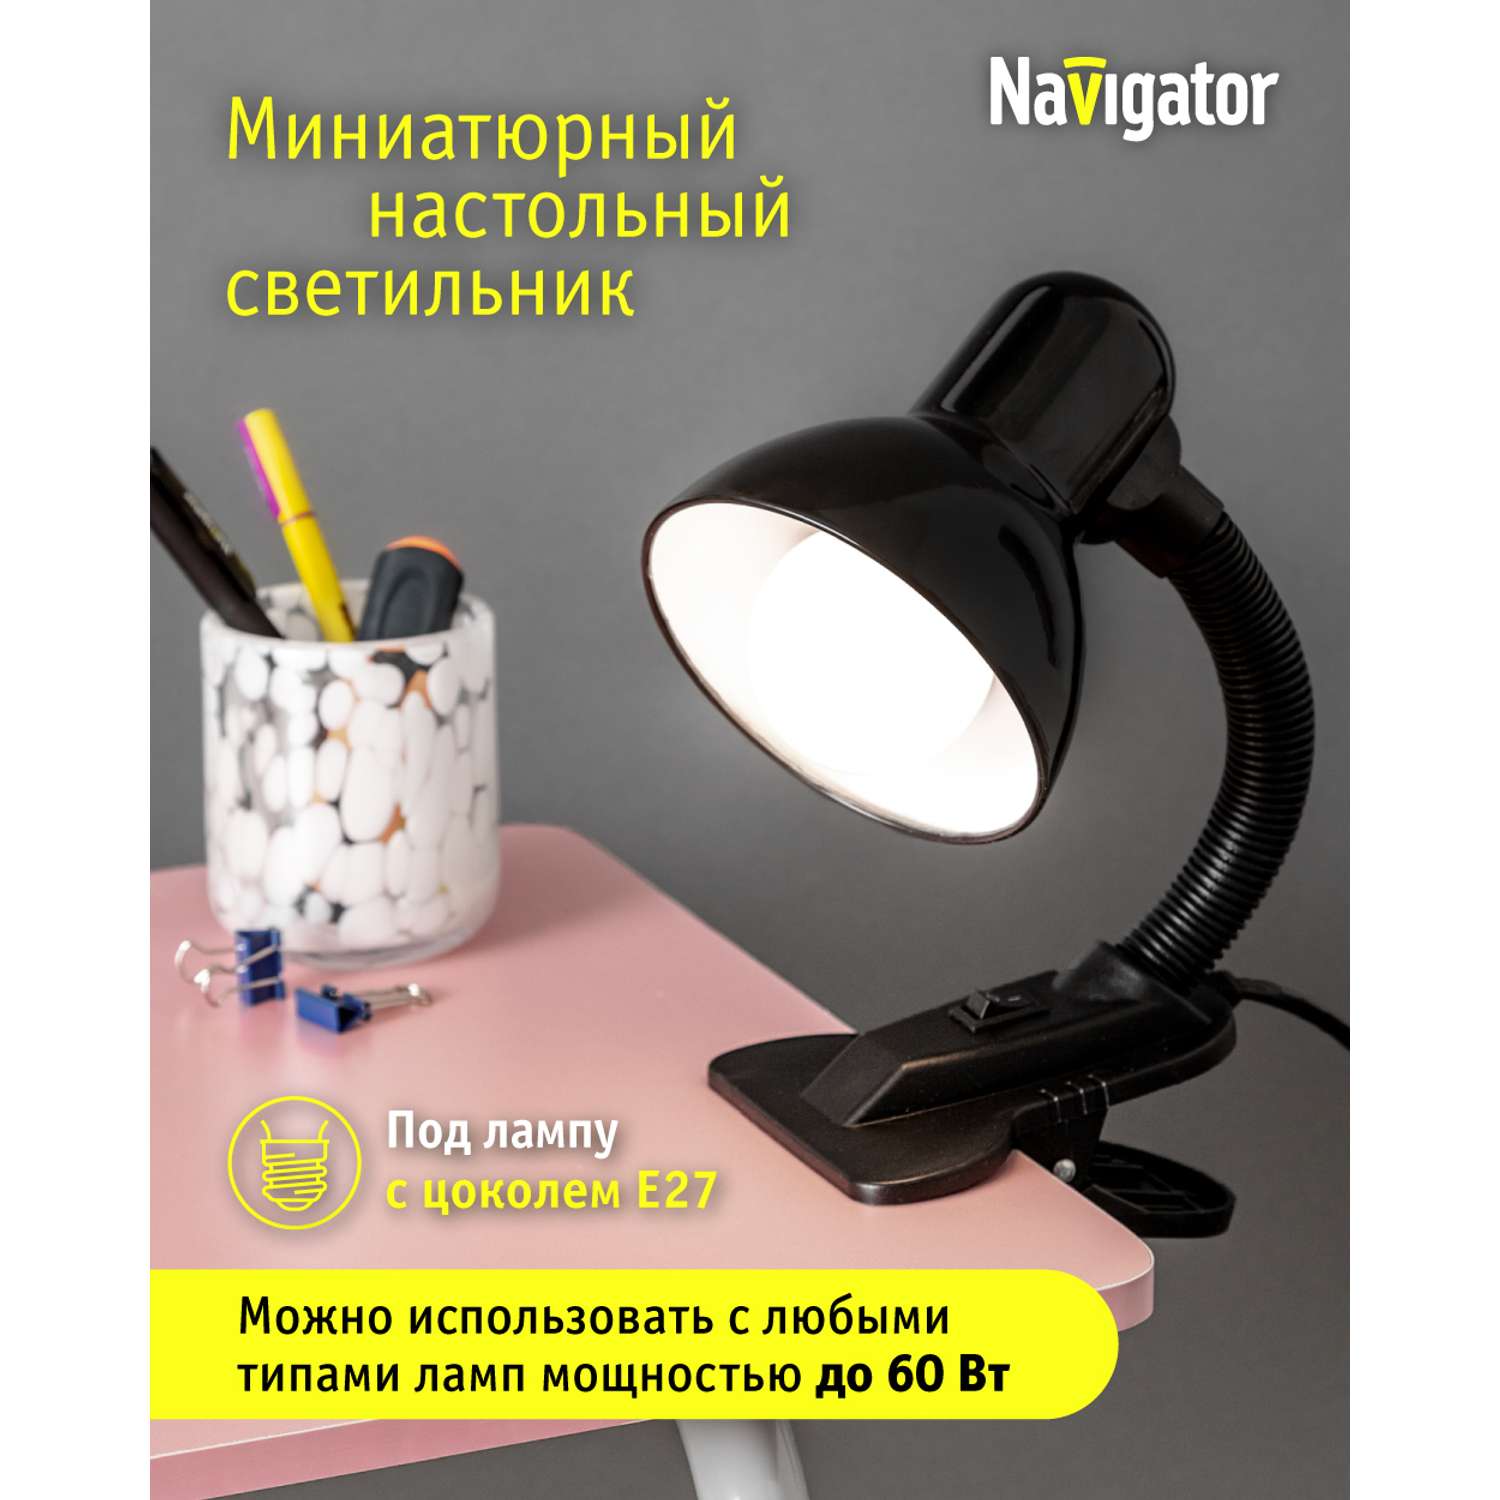 Лампа настольная navigator черная на прищепке под лампу с цоколем Е27 - фото 1